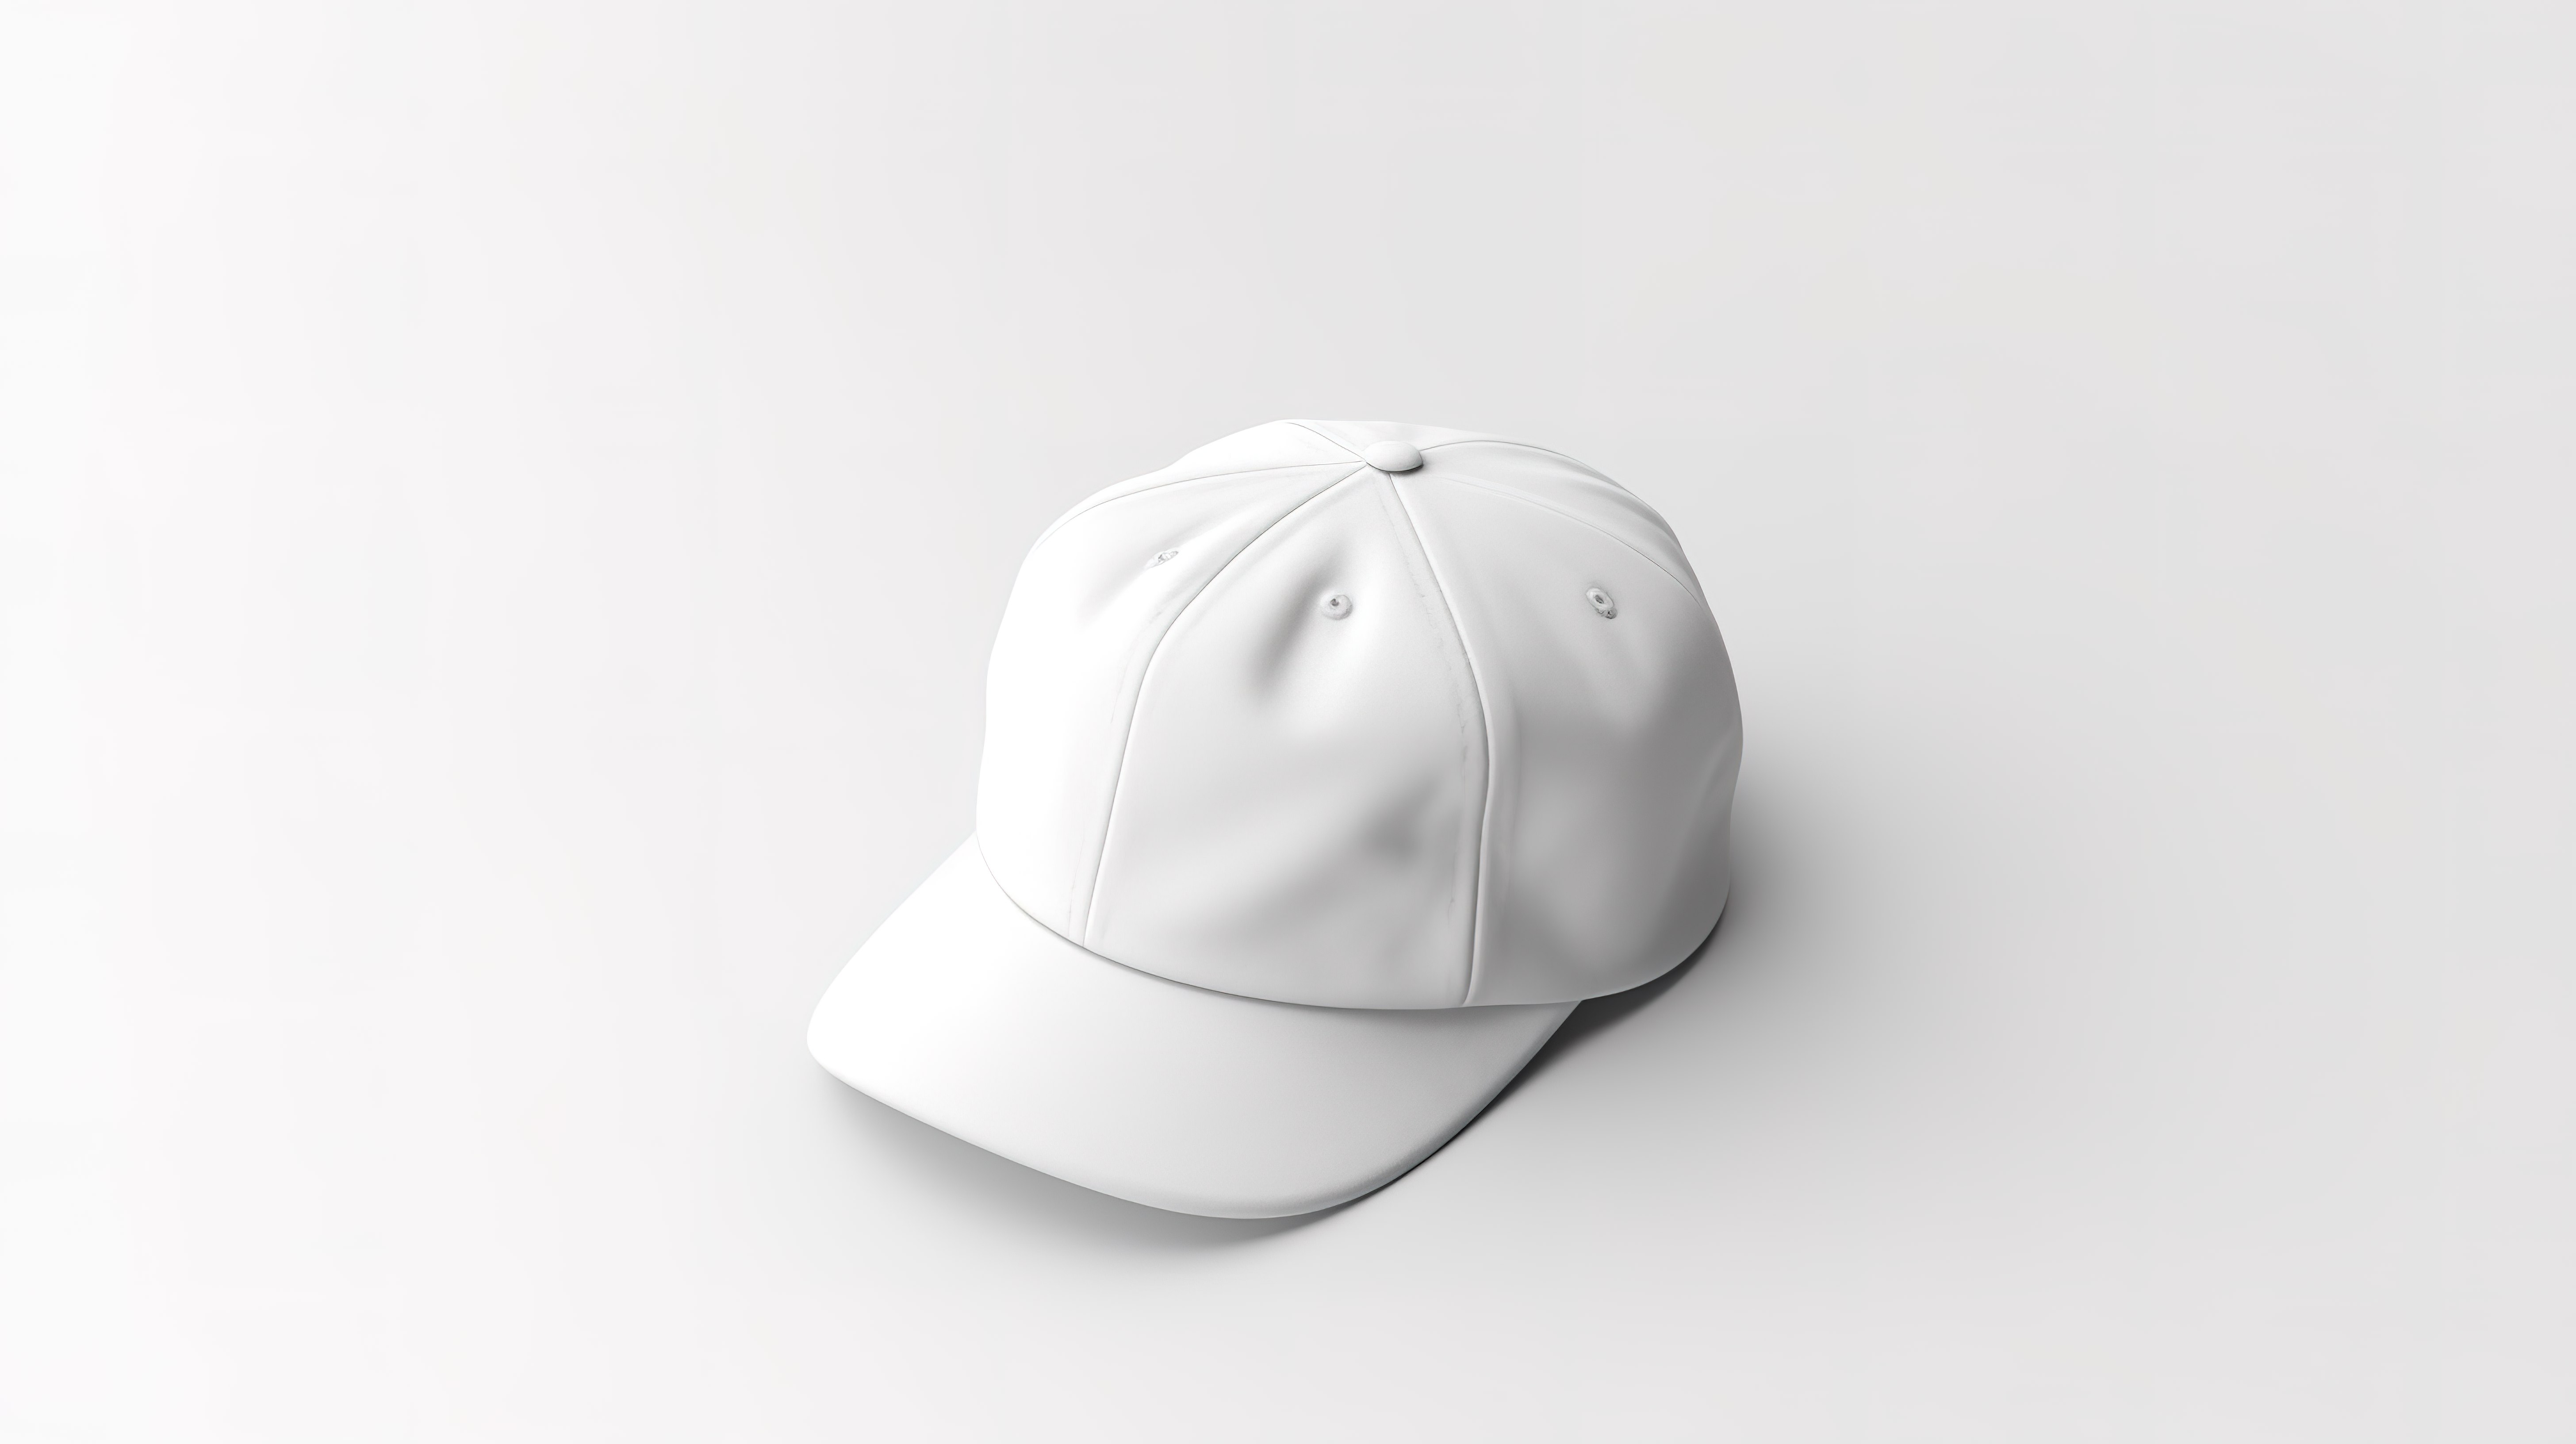 空白白色背景上白色制服帽或帽子样机的 3D 渲染图片